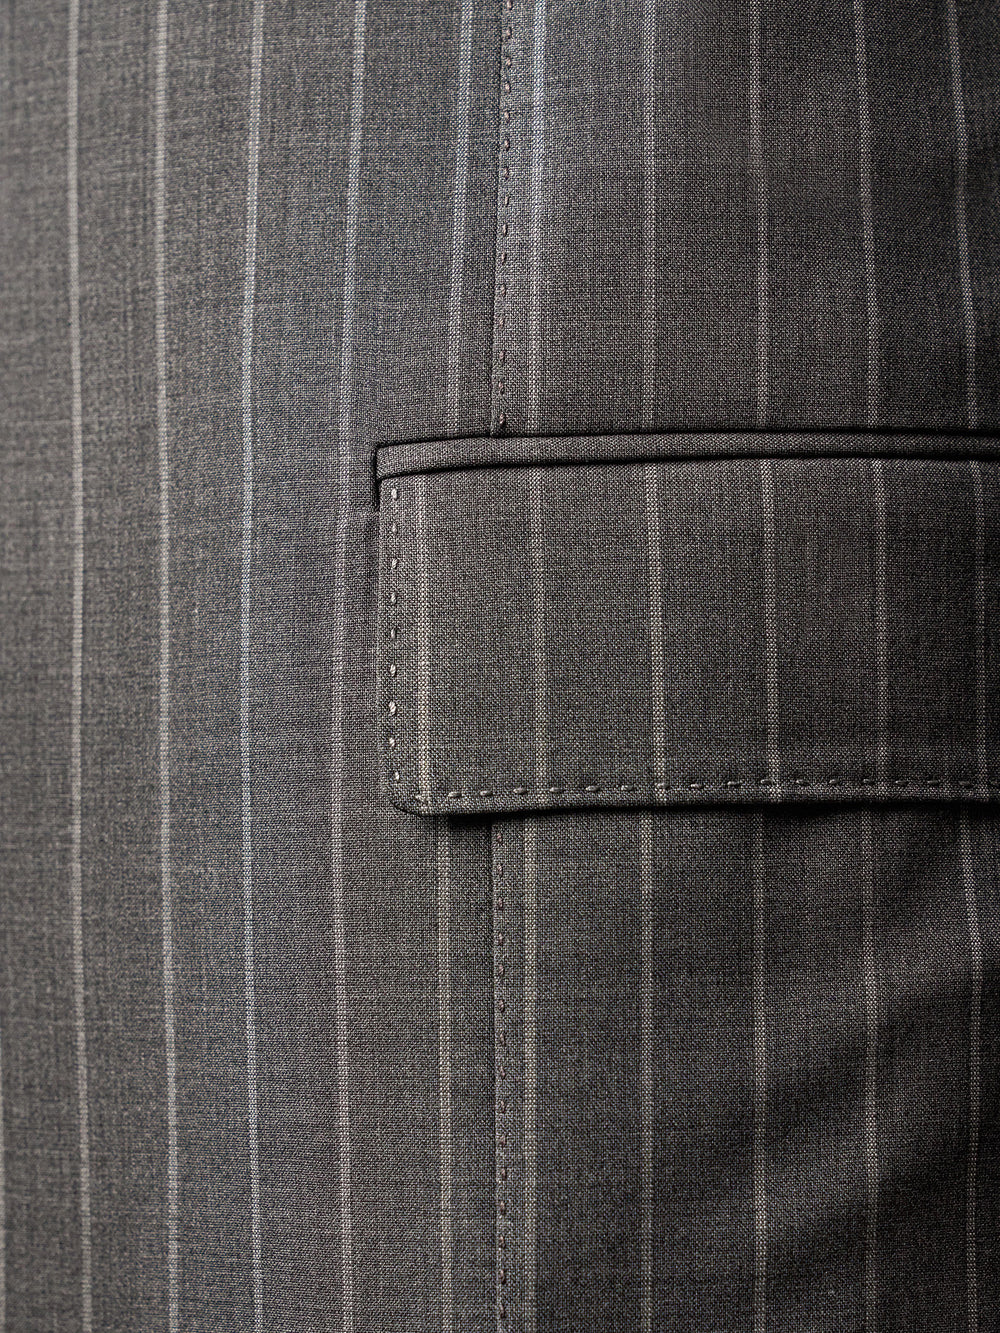 中灰色细条纹超级 160 年代套装